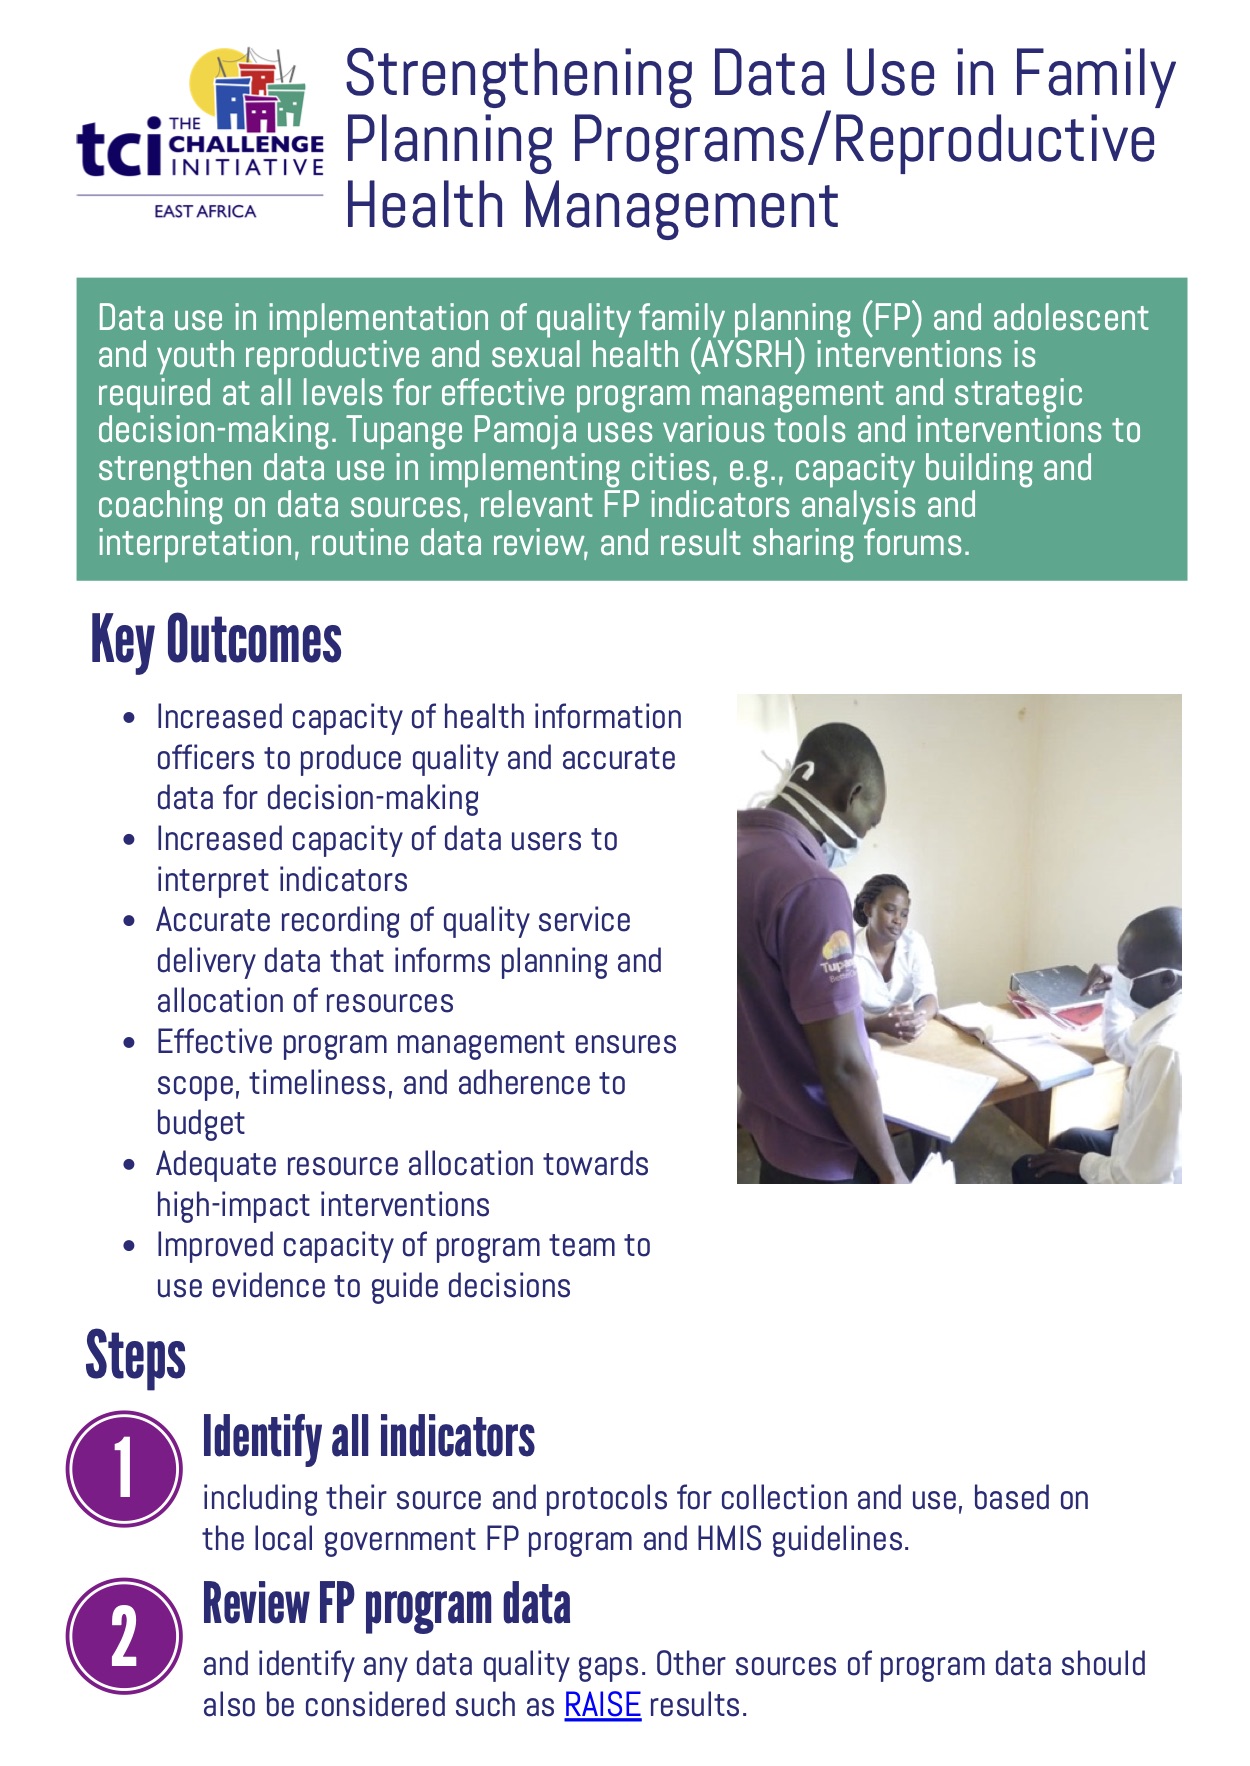 Renforcement de l'utilisation des données dans les programmes de planification familiale / Aide-mémoire sur la gestion de la santé reproductive